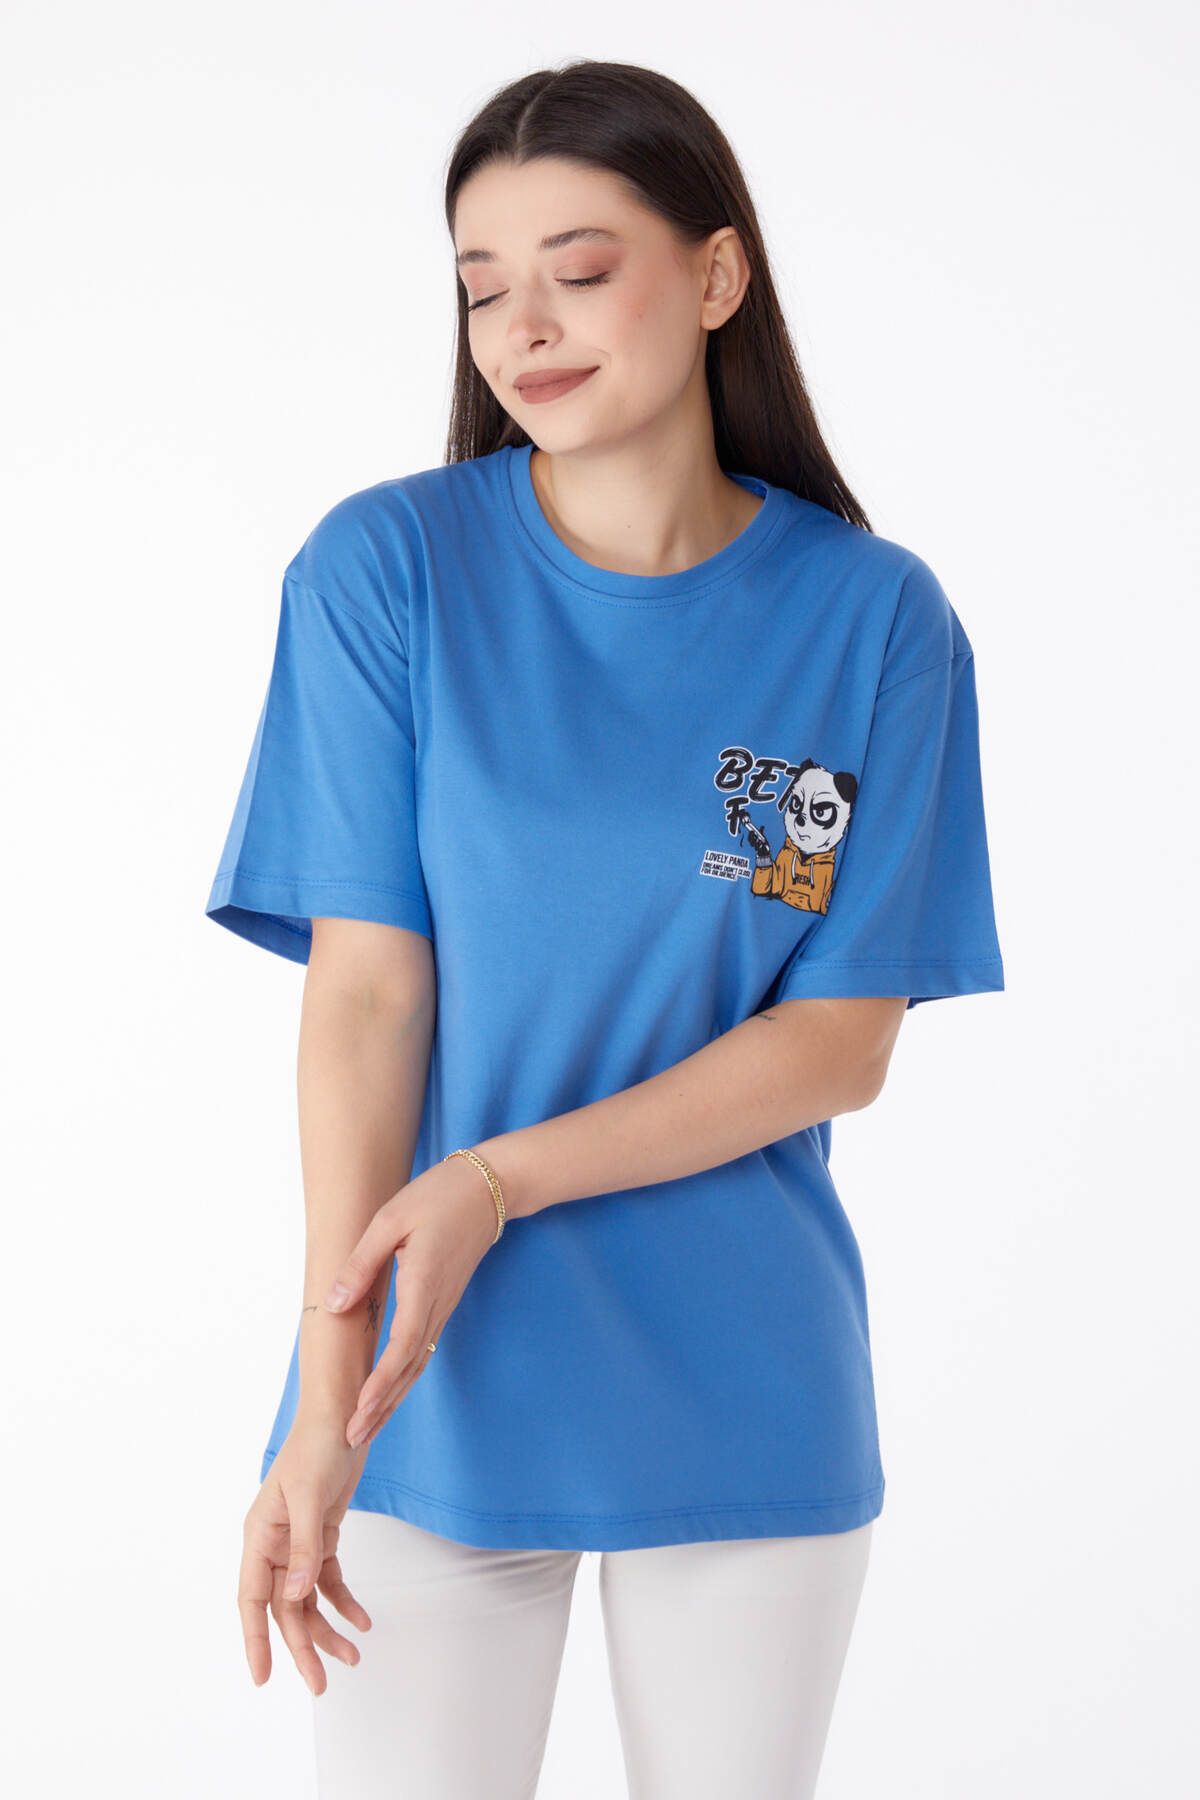 TOFİSA Düz Bisiklet Yaka Kadın Mavi Baskılı T-shirt - 25286